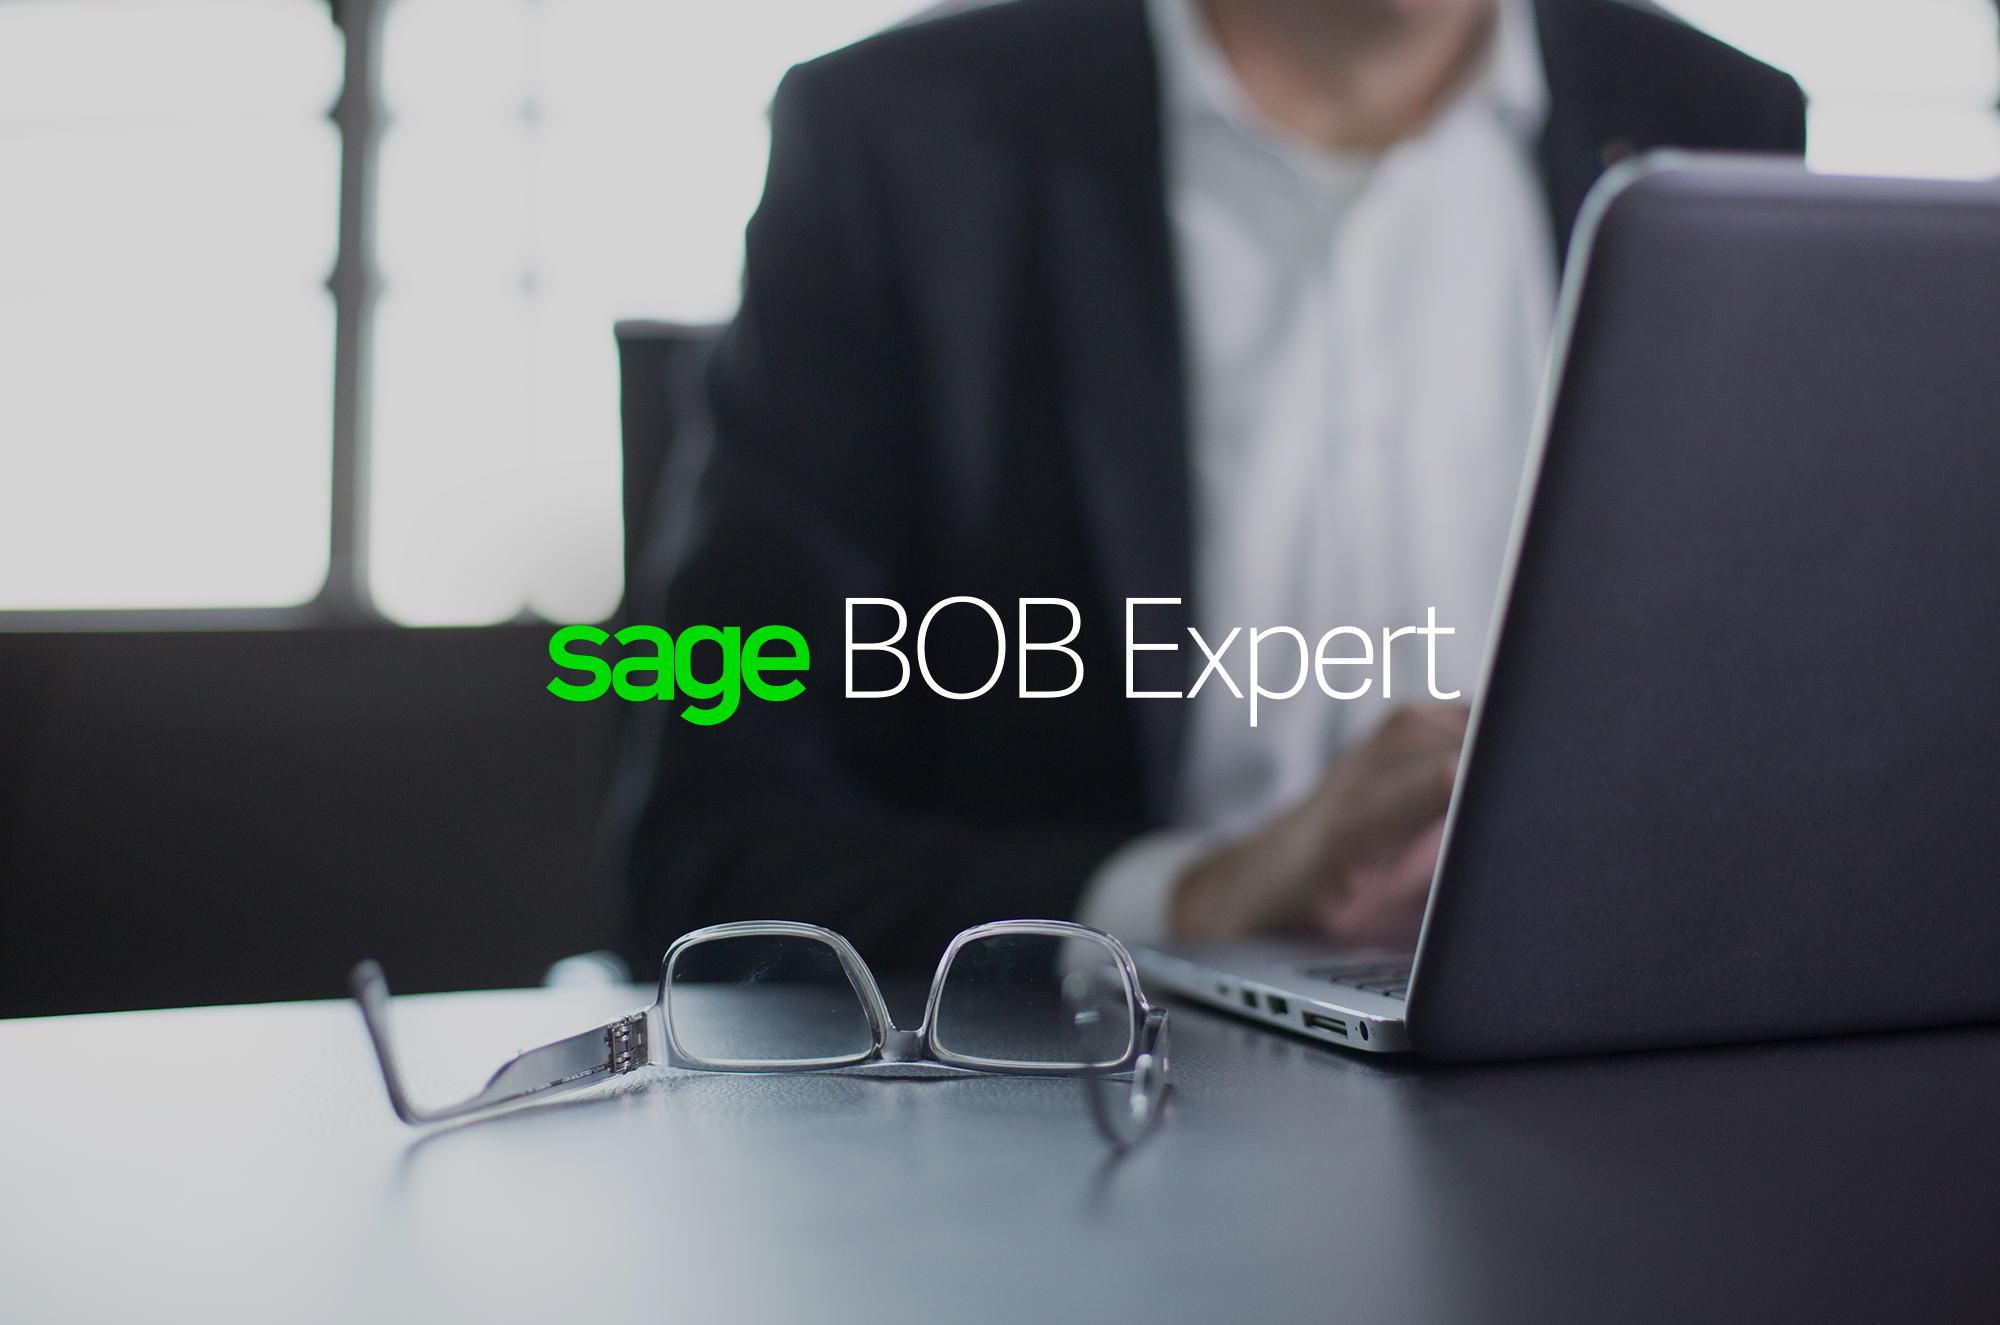 SAGE BOB EXPERT - Applications